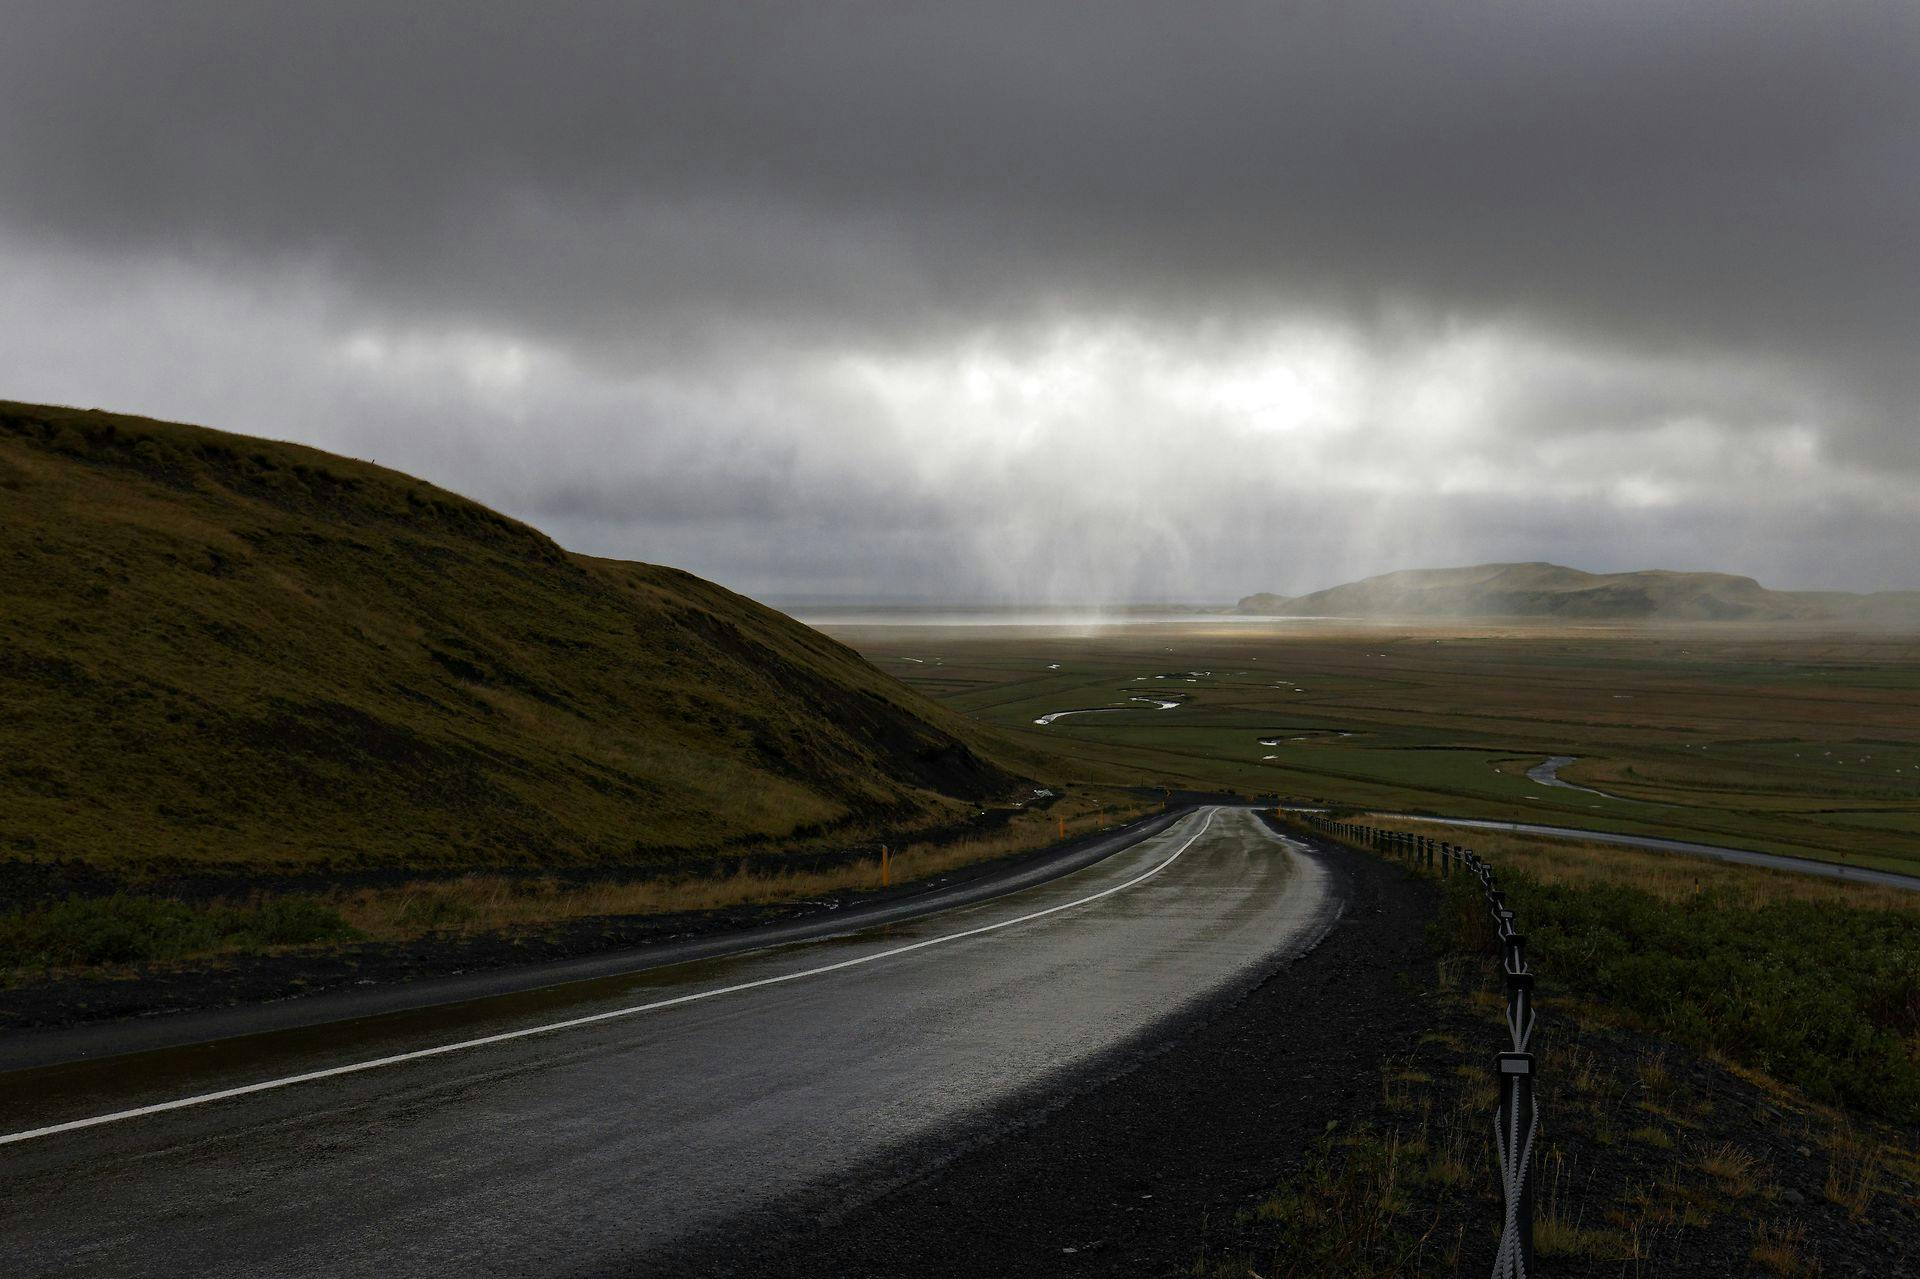 Det er desværre kun skyerne, vi får glæde af fra Island i weekenden. Den smukke natur beholder de.